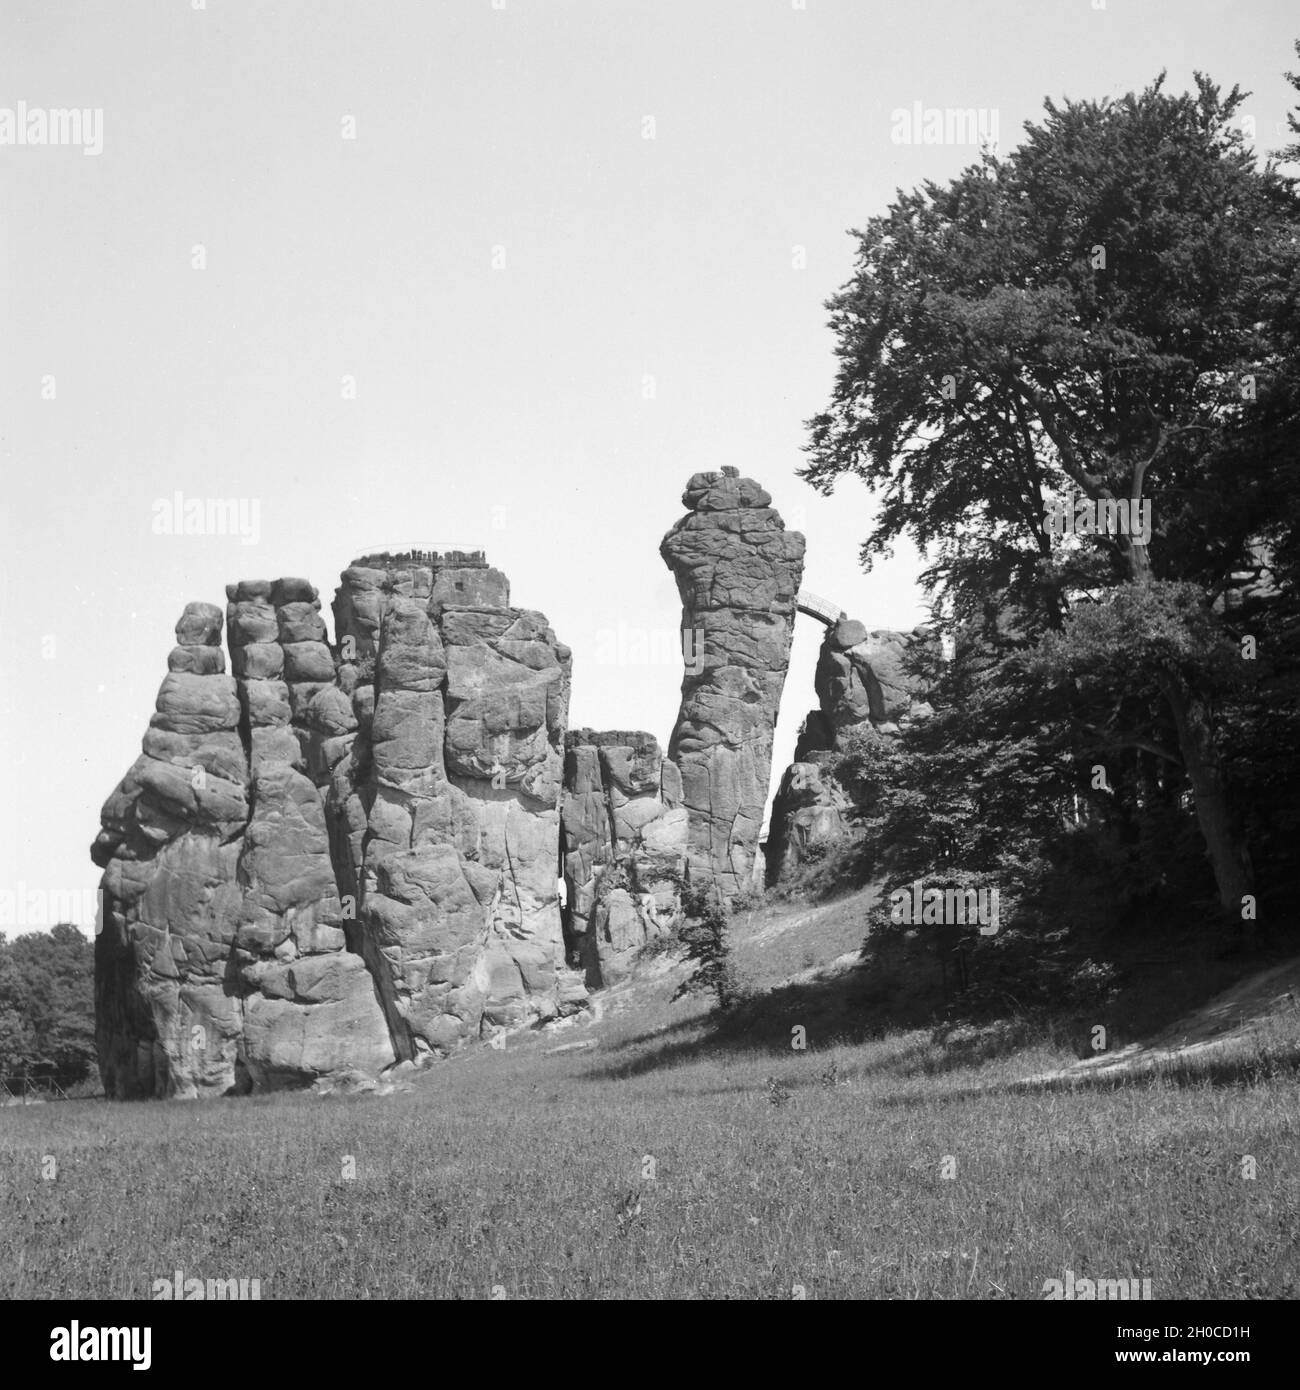 Die Externsteine bei Horn im Teutoburger Wald, Deutschland 1930er Jahre. Externsteine rock formation near Horn at Teutoburg Forest, Germany 1930s. Stock Photo